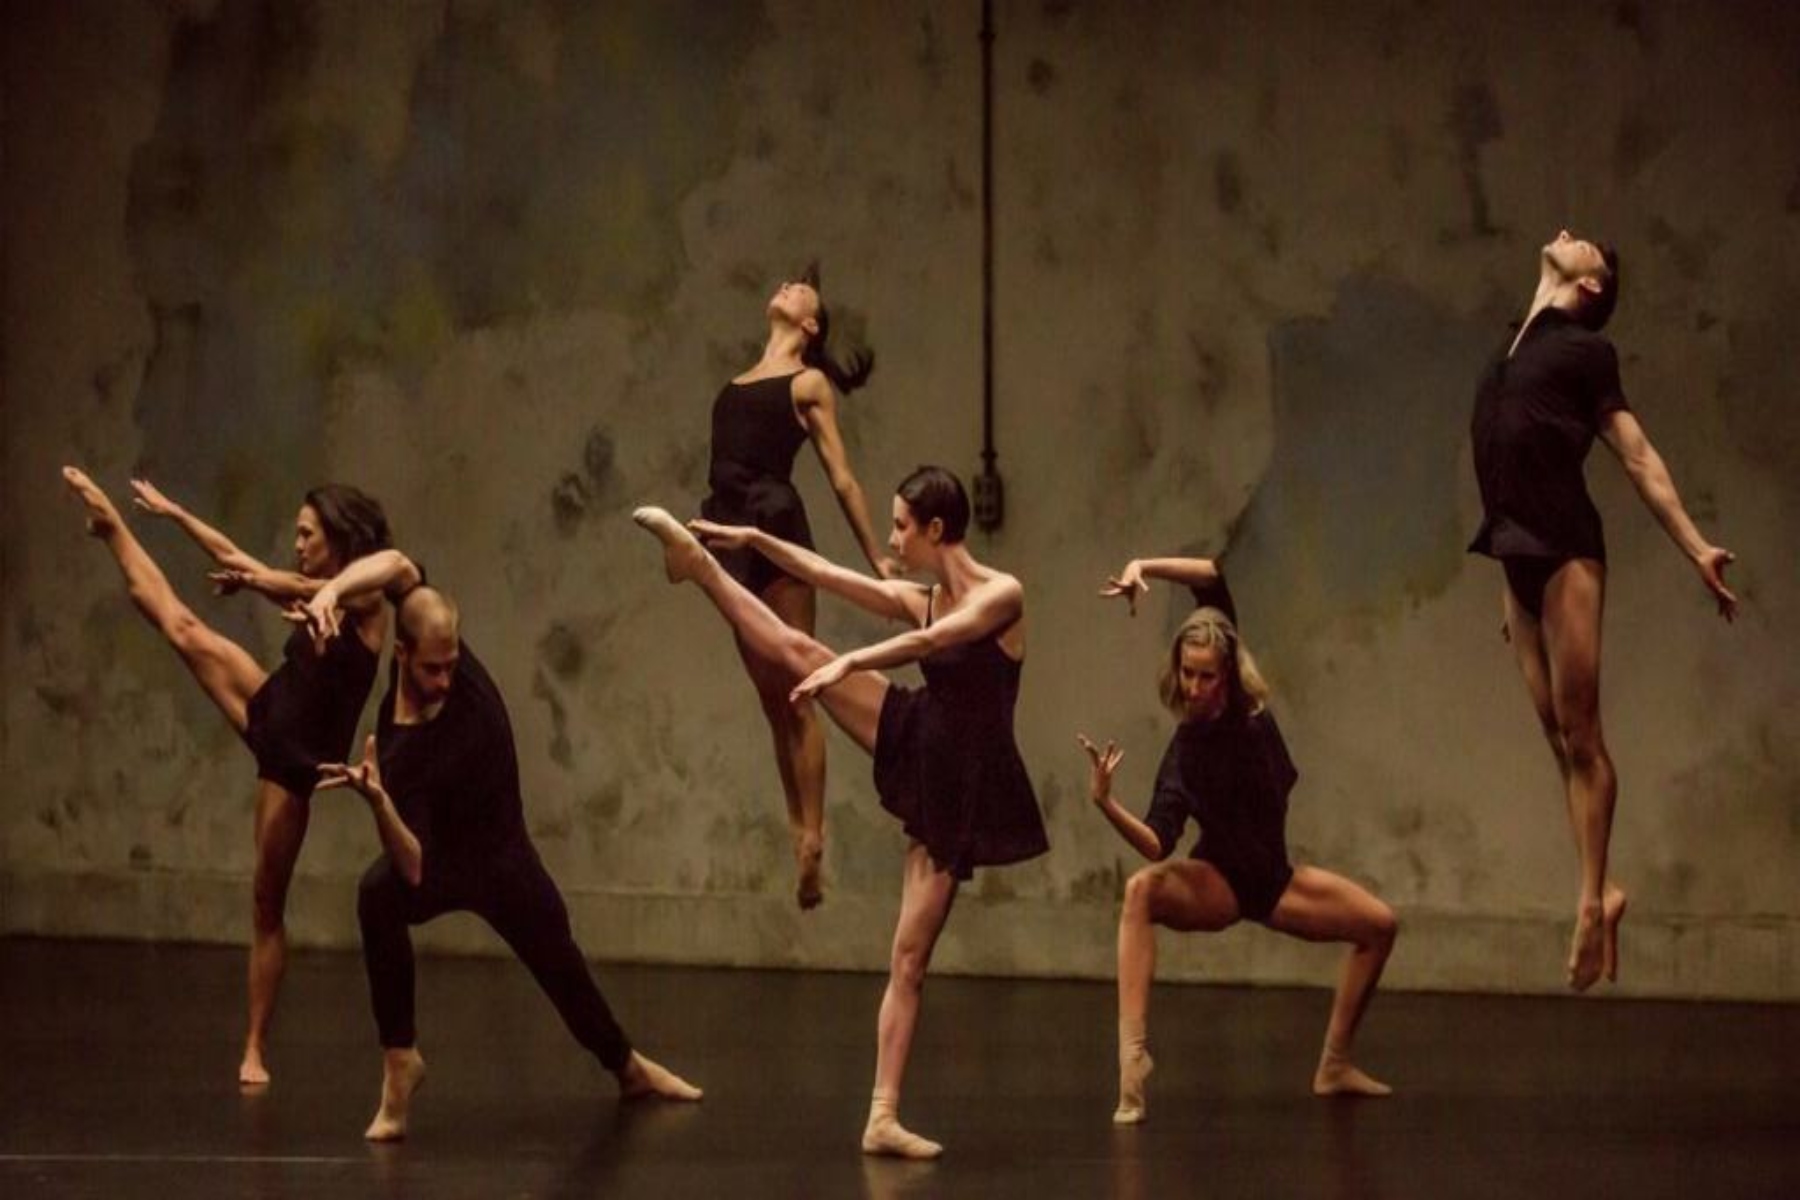 Ψυχική υγεία χορός: Τελικά ο χορός βοηθάει την υγεία μας